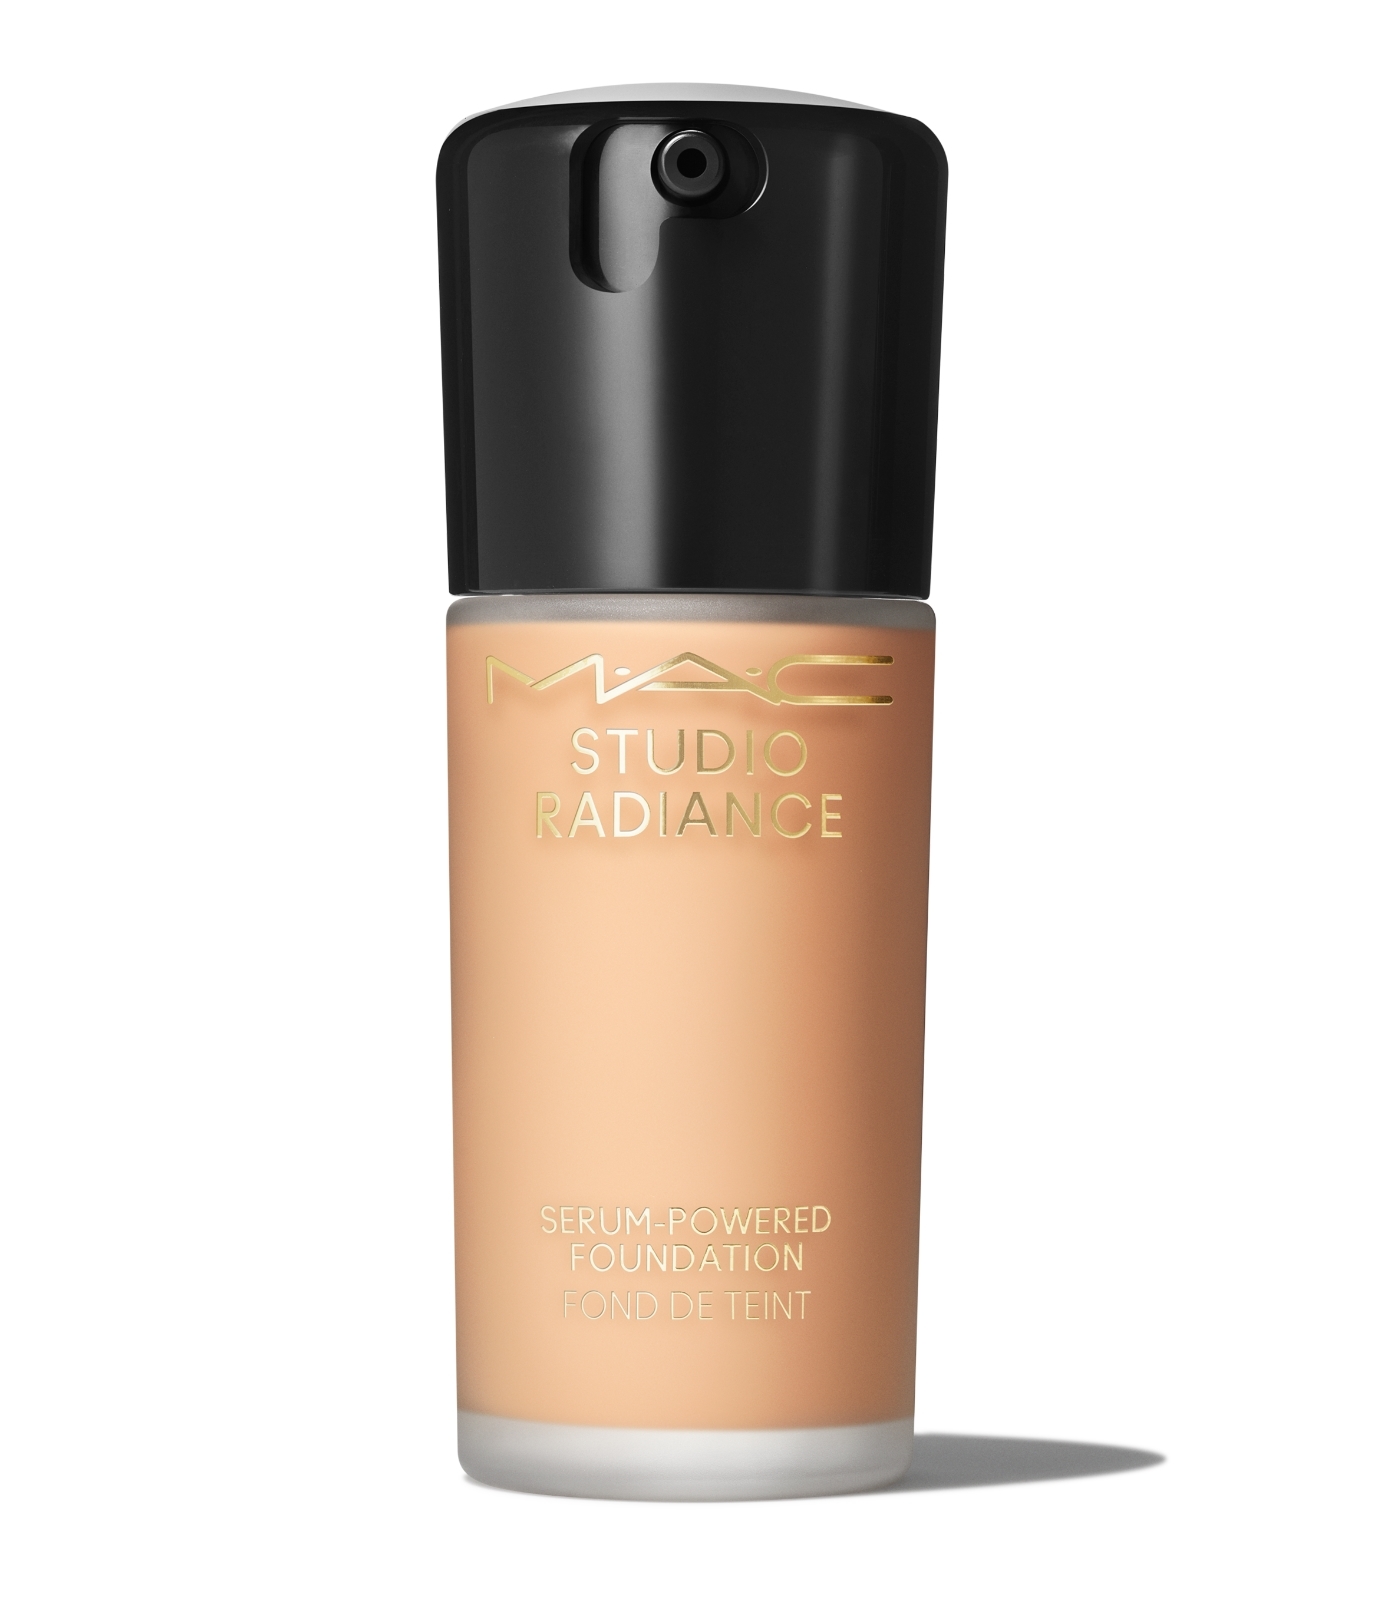 Base de maquillaje Studio Radiance Serum-Powered Foundation de MAC con ácido hialurónico que apenas notes que la llevas, aporta cobertura y un aspecto luminoso a la piel (52 euros).